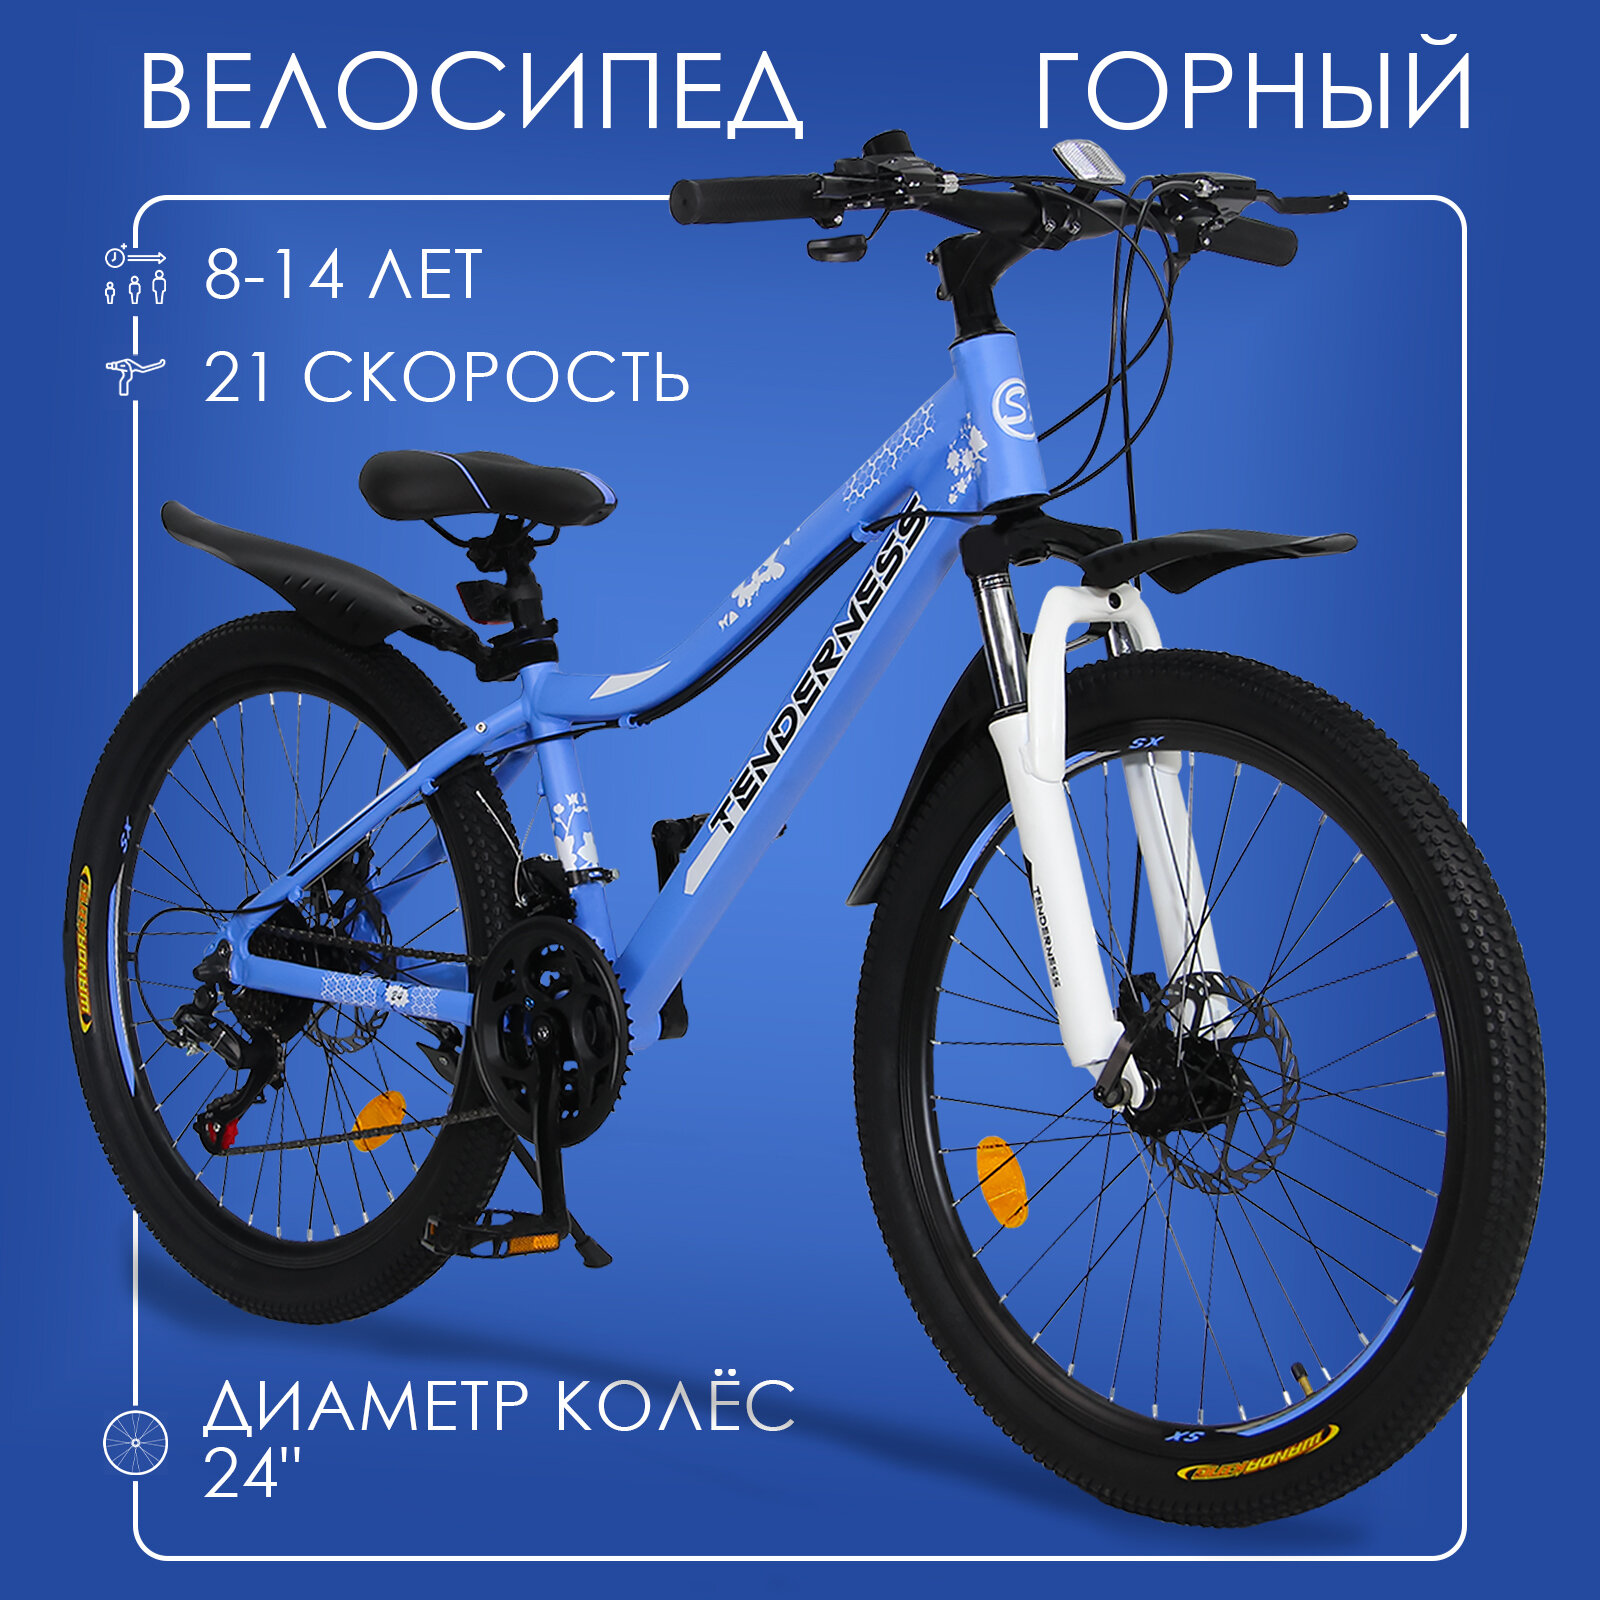 Горный велосипед детский скоростной Tenderness 24" голубой 8-14 лет 21 скорость (Shimano tourney)